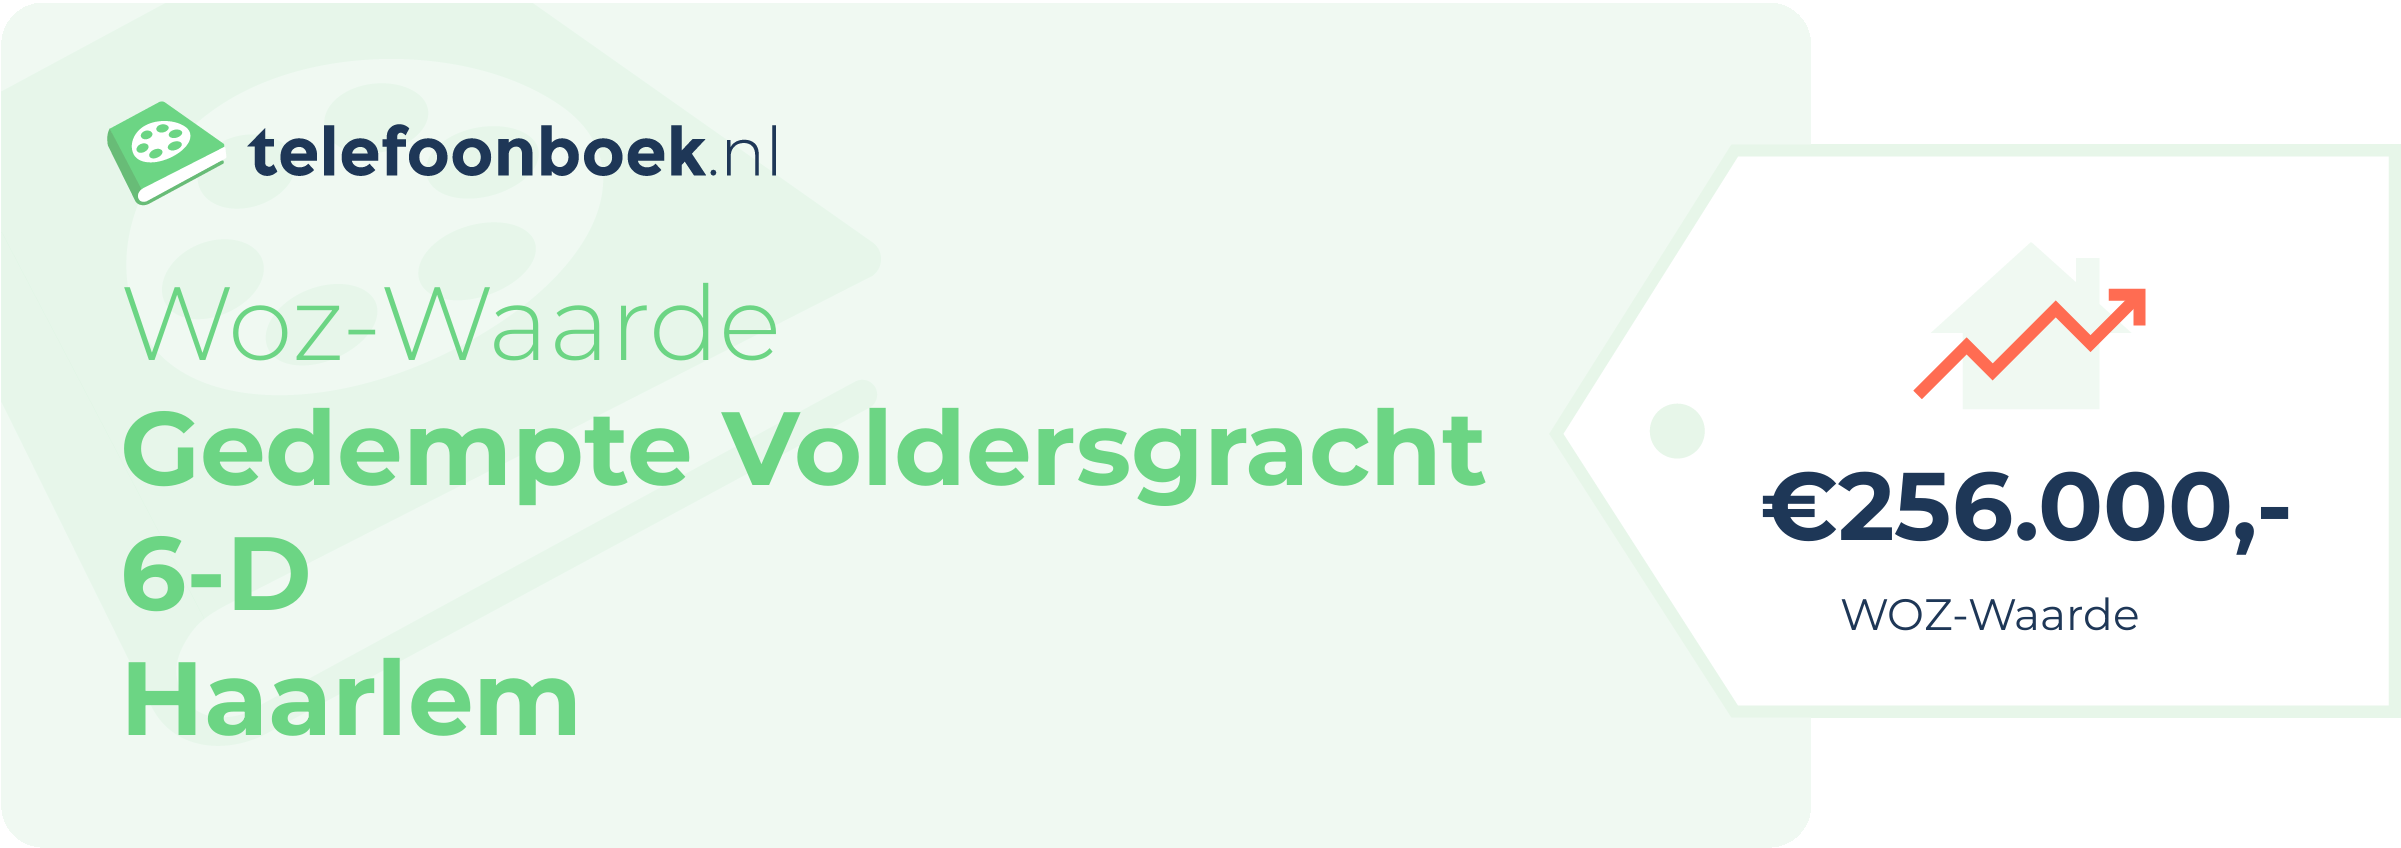 WOZ-waarde Gedempte Voldersgracht 6-D Haarlem